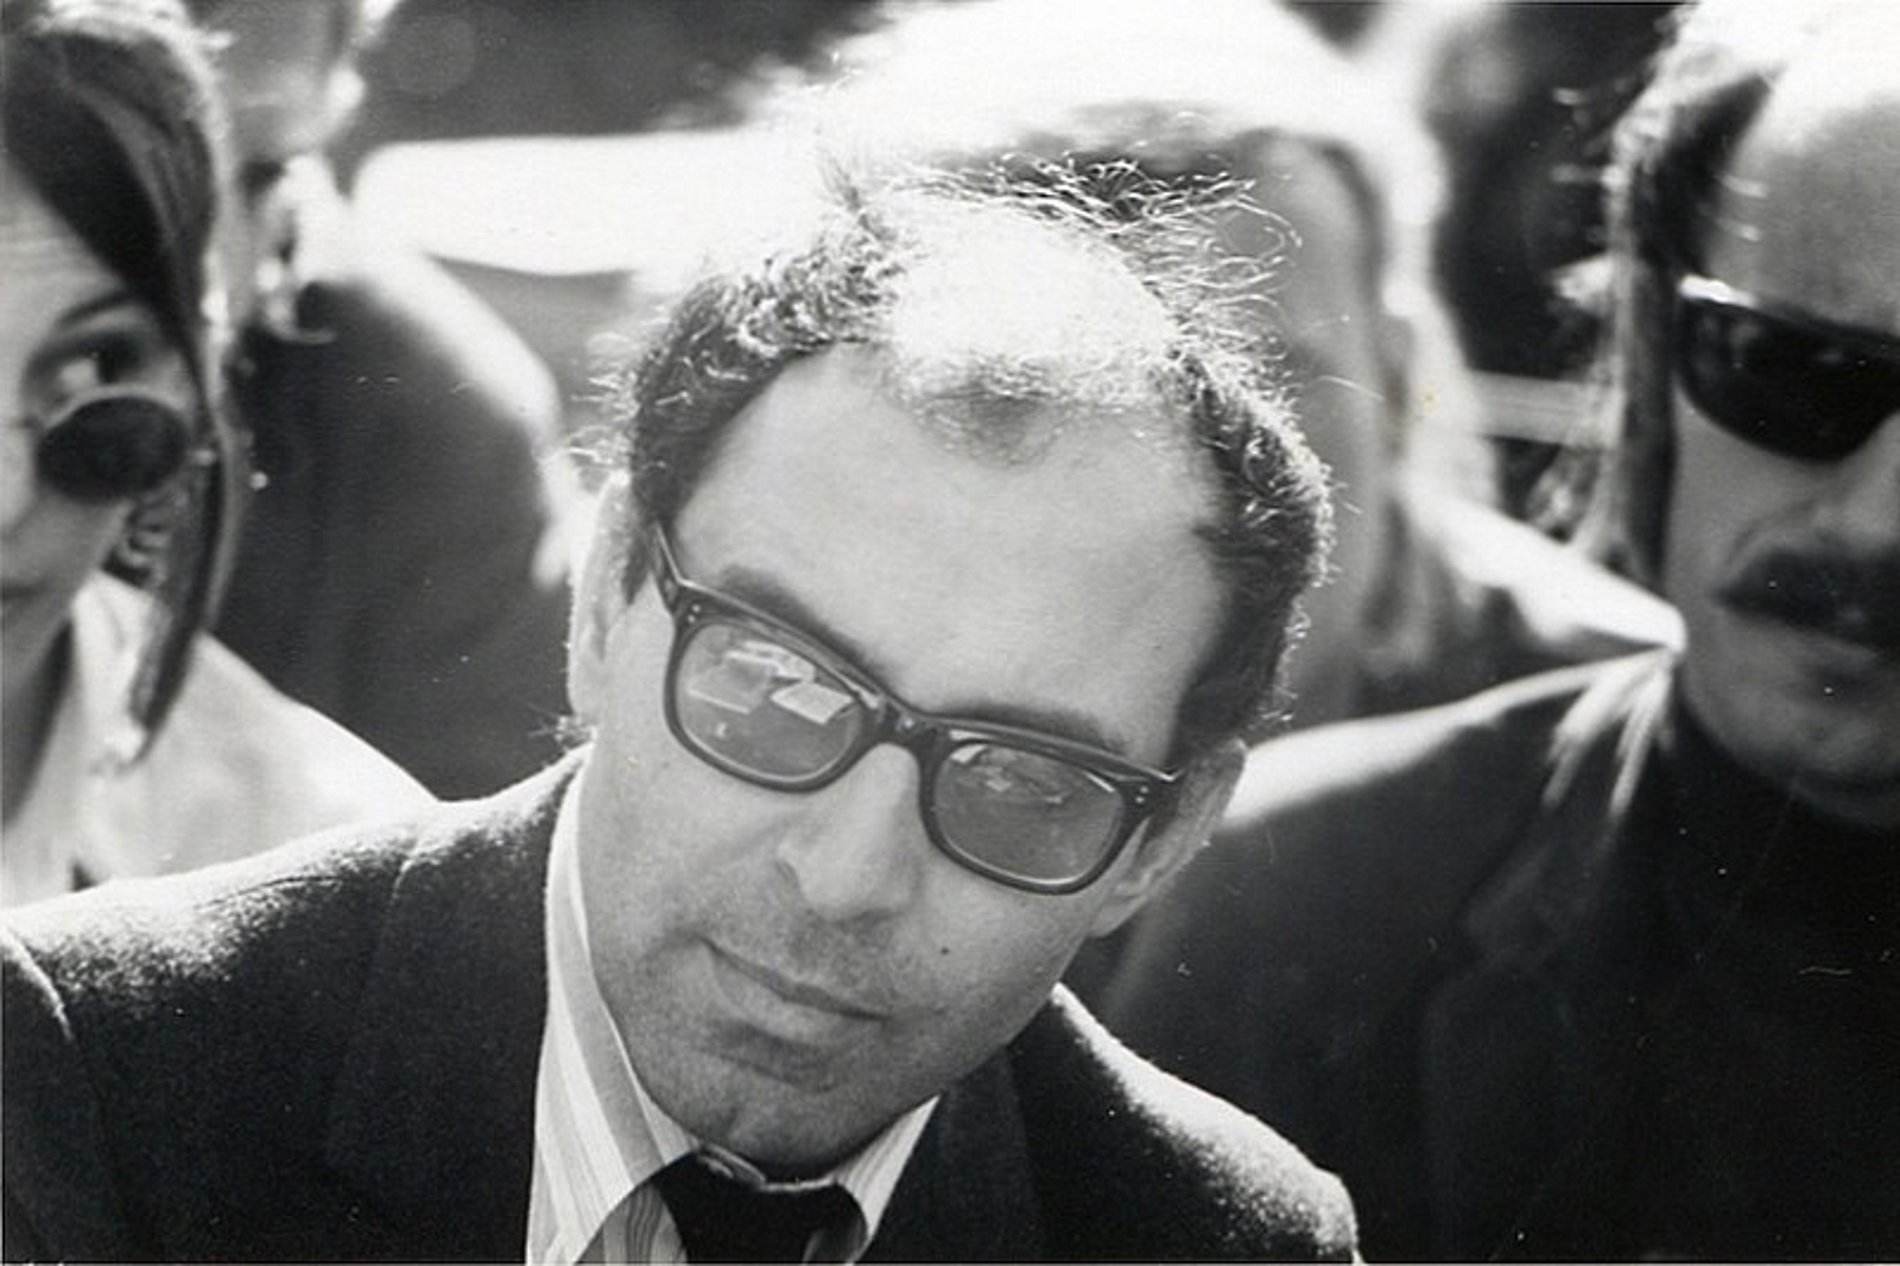 L'homenatge de Jean-Luc Godard a Catalunya, a Canes